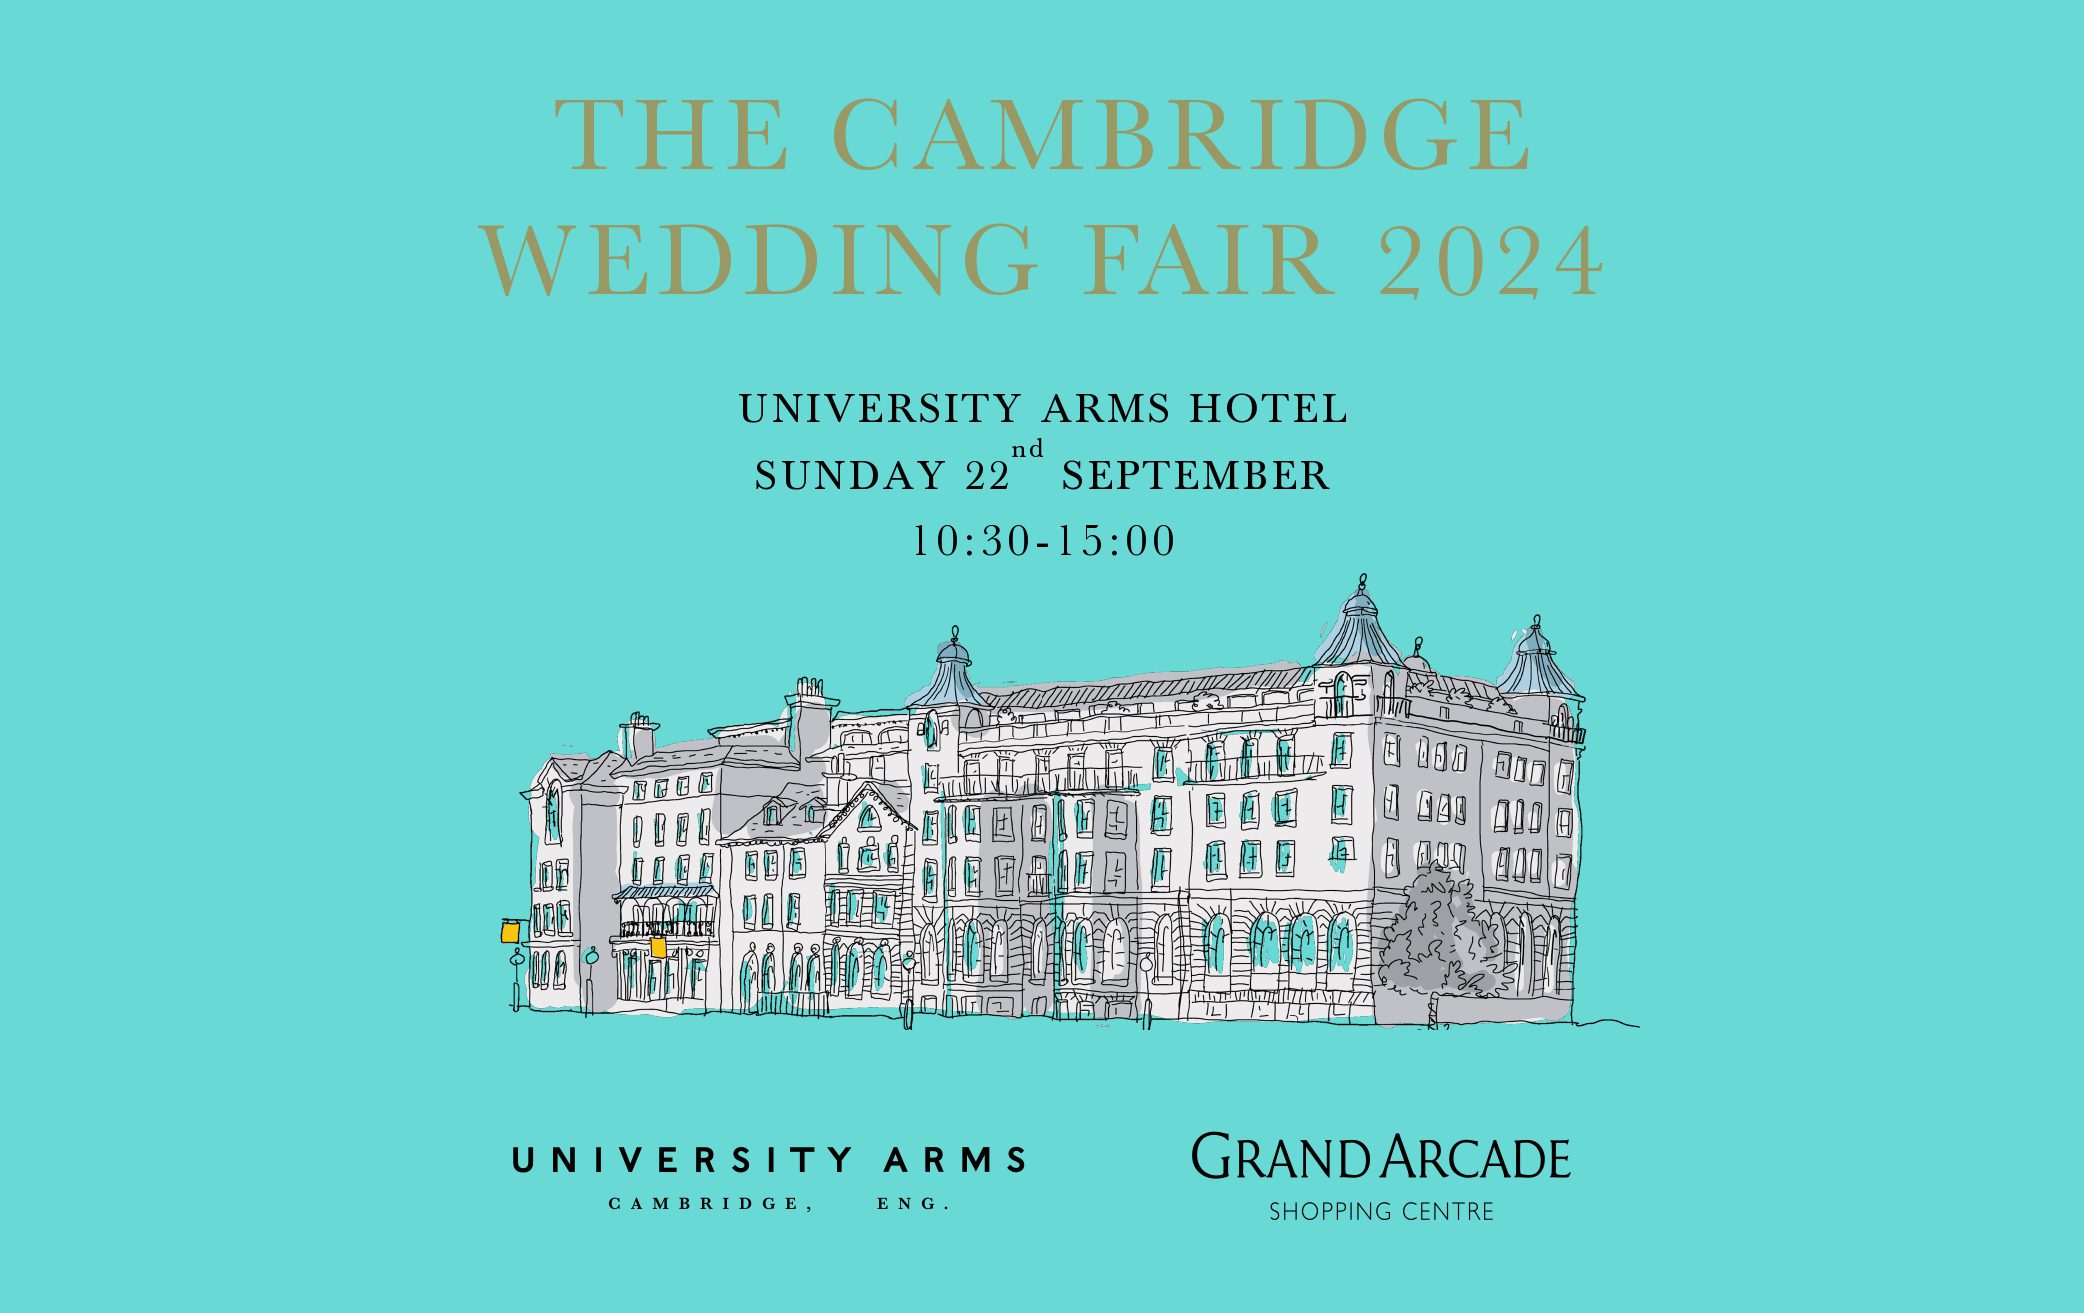 The Cambridge Wedding Fair